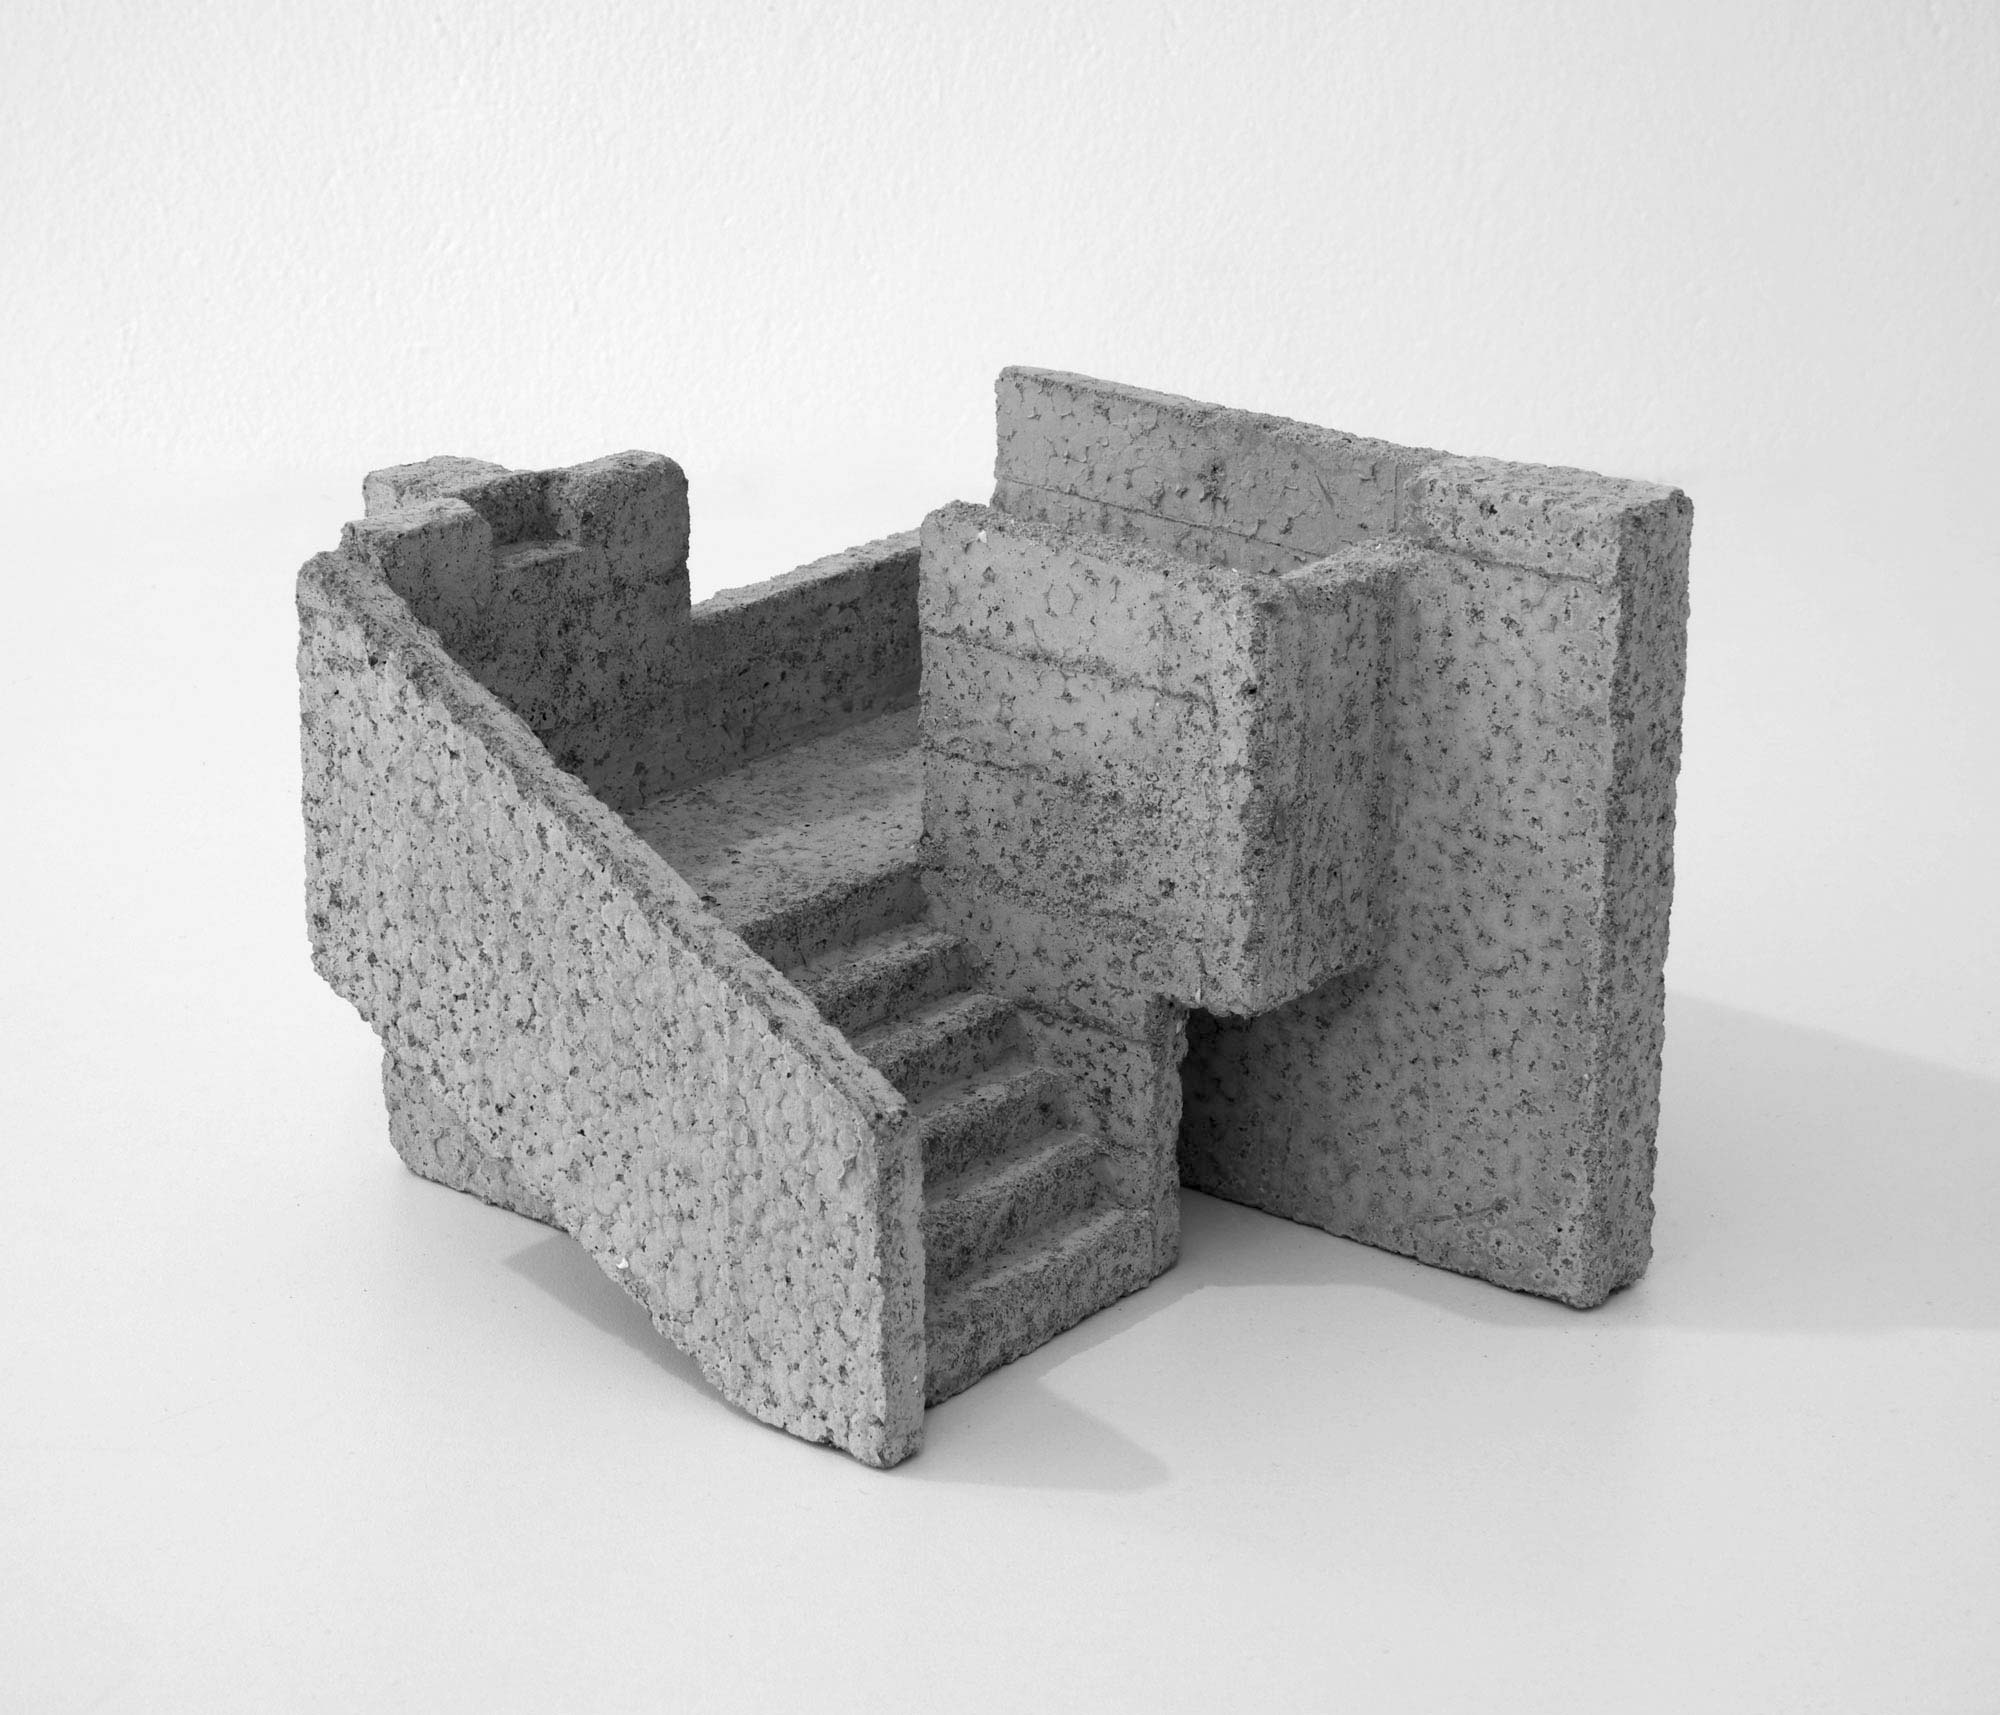 mattia listowski art design objet décoration sculpture béton moulage micro architecture maquette escalier droite droite édition limitée numérotée signée paris bruxelles 2021